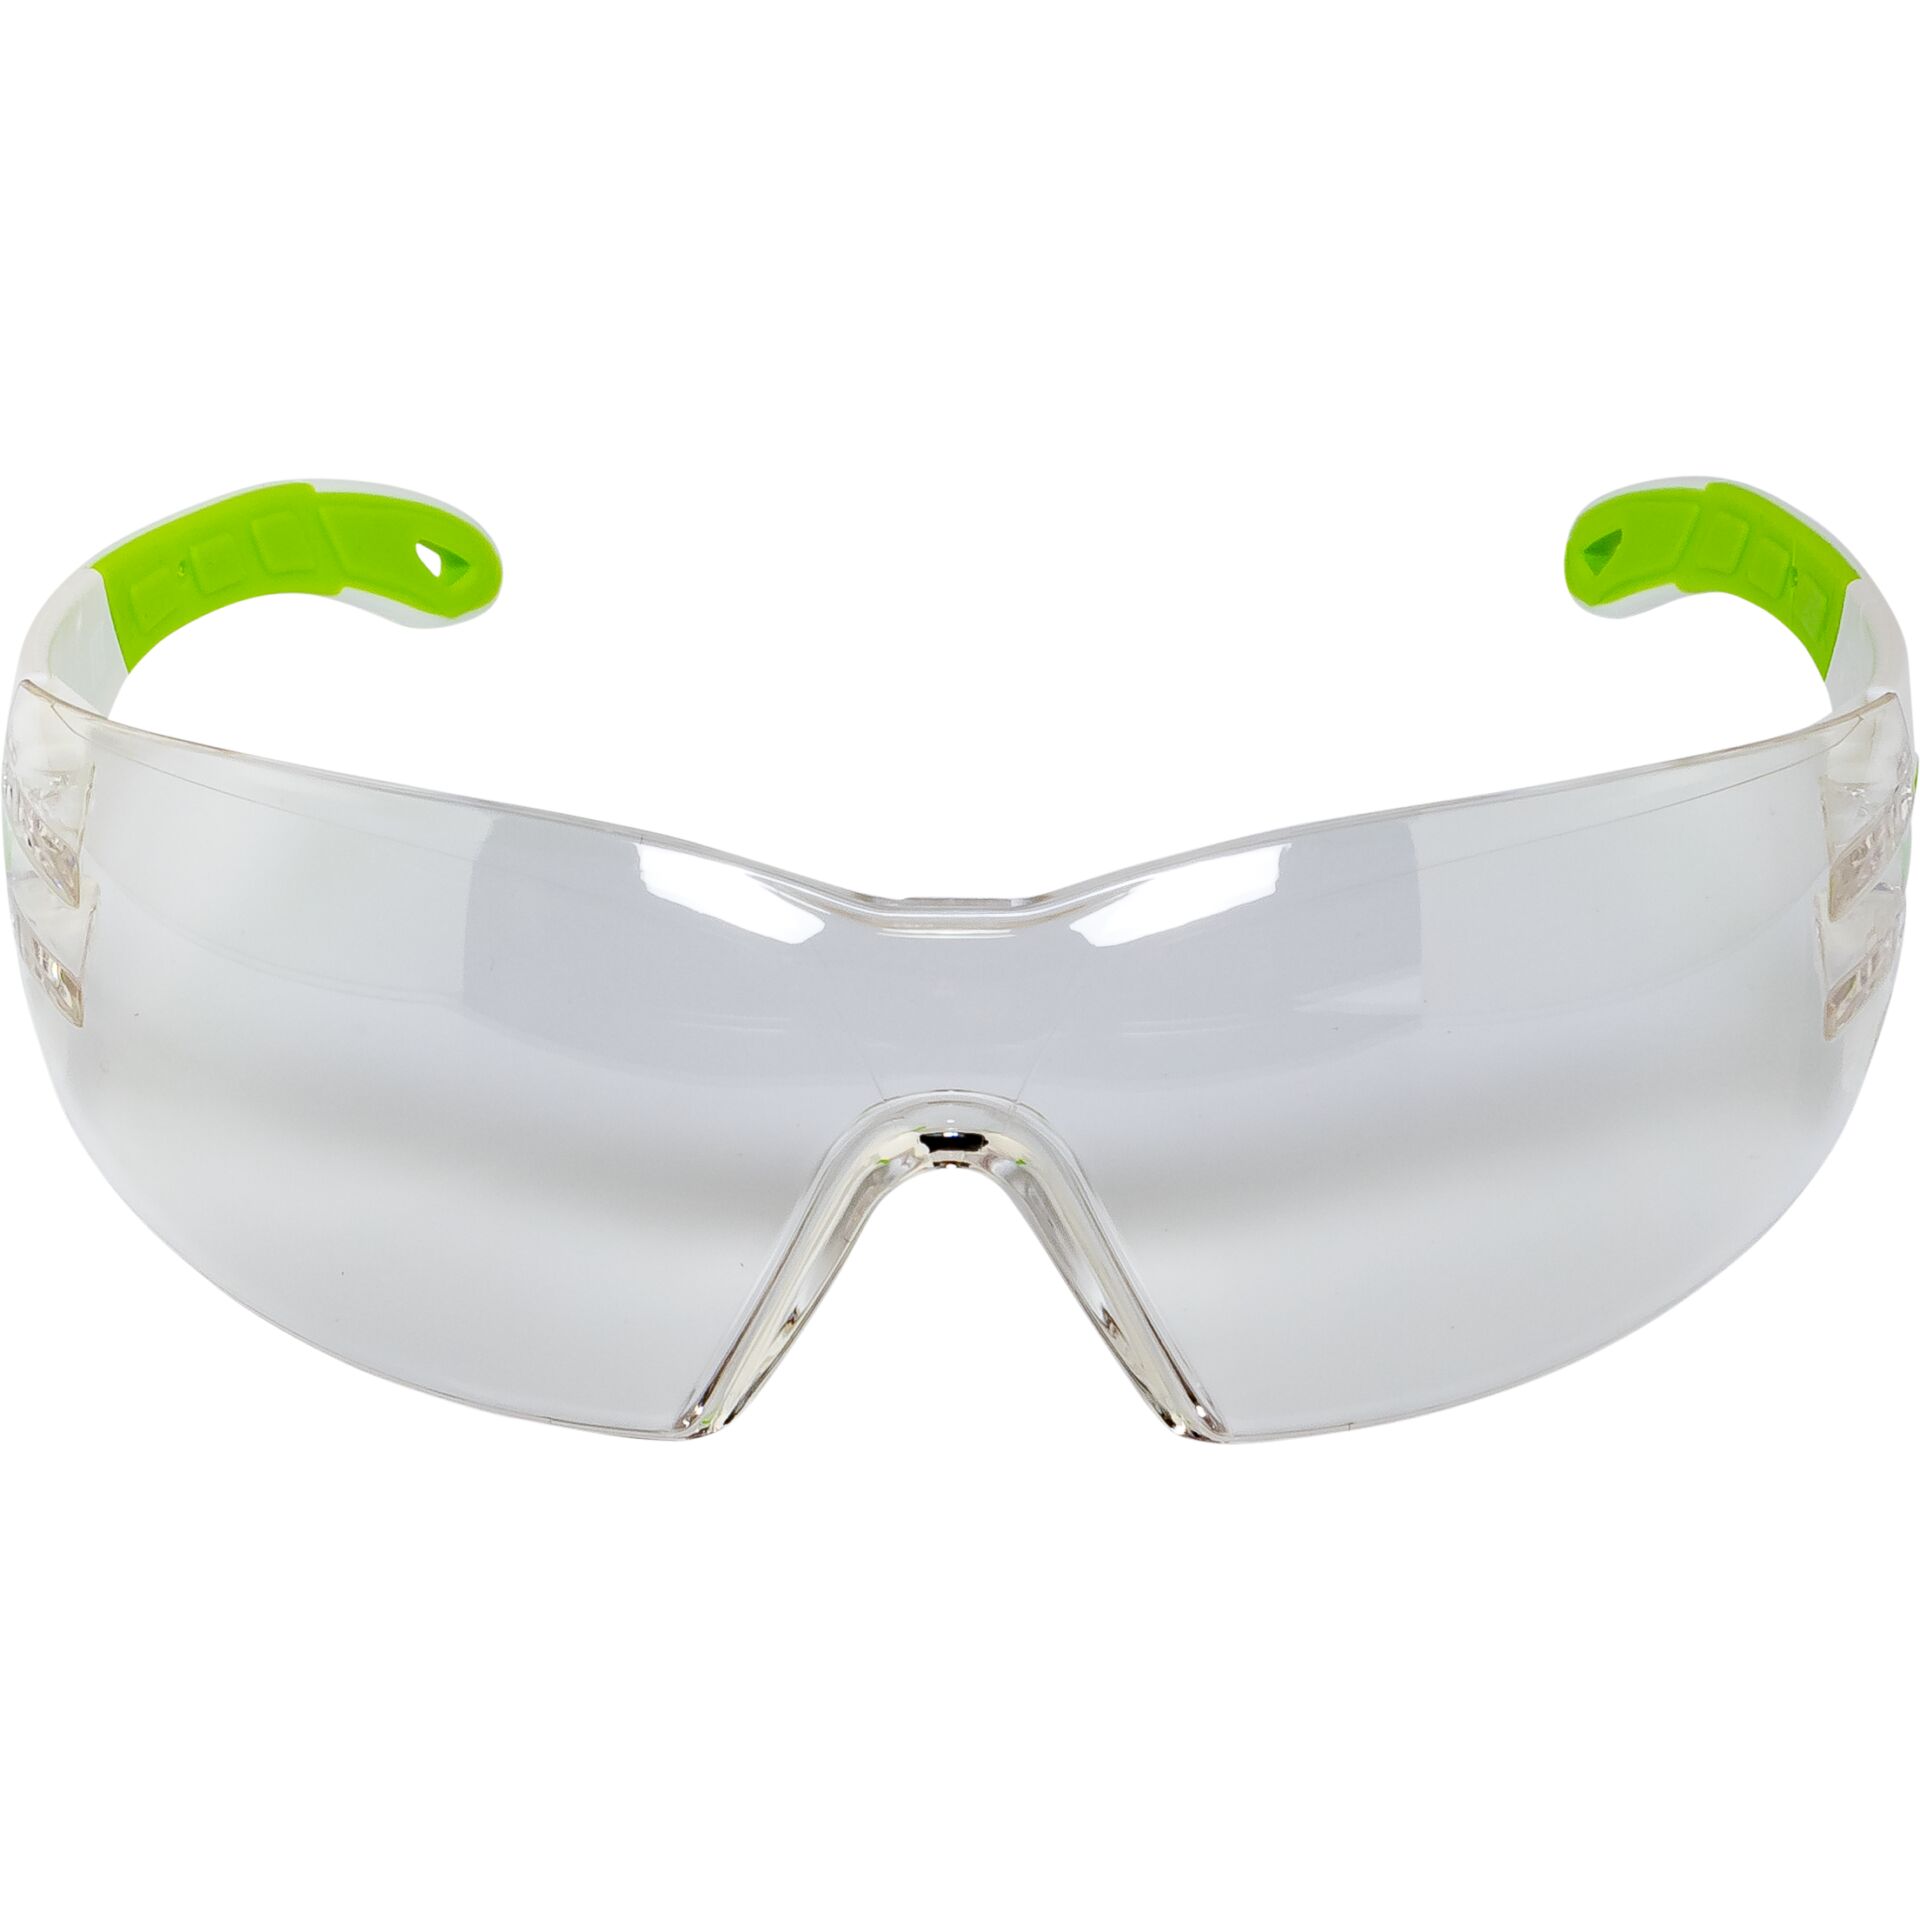 Uvex 9192725 Schutzbrille/Sicherheitsbrille Grün, Weiß